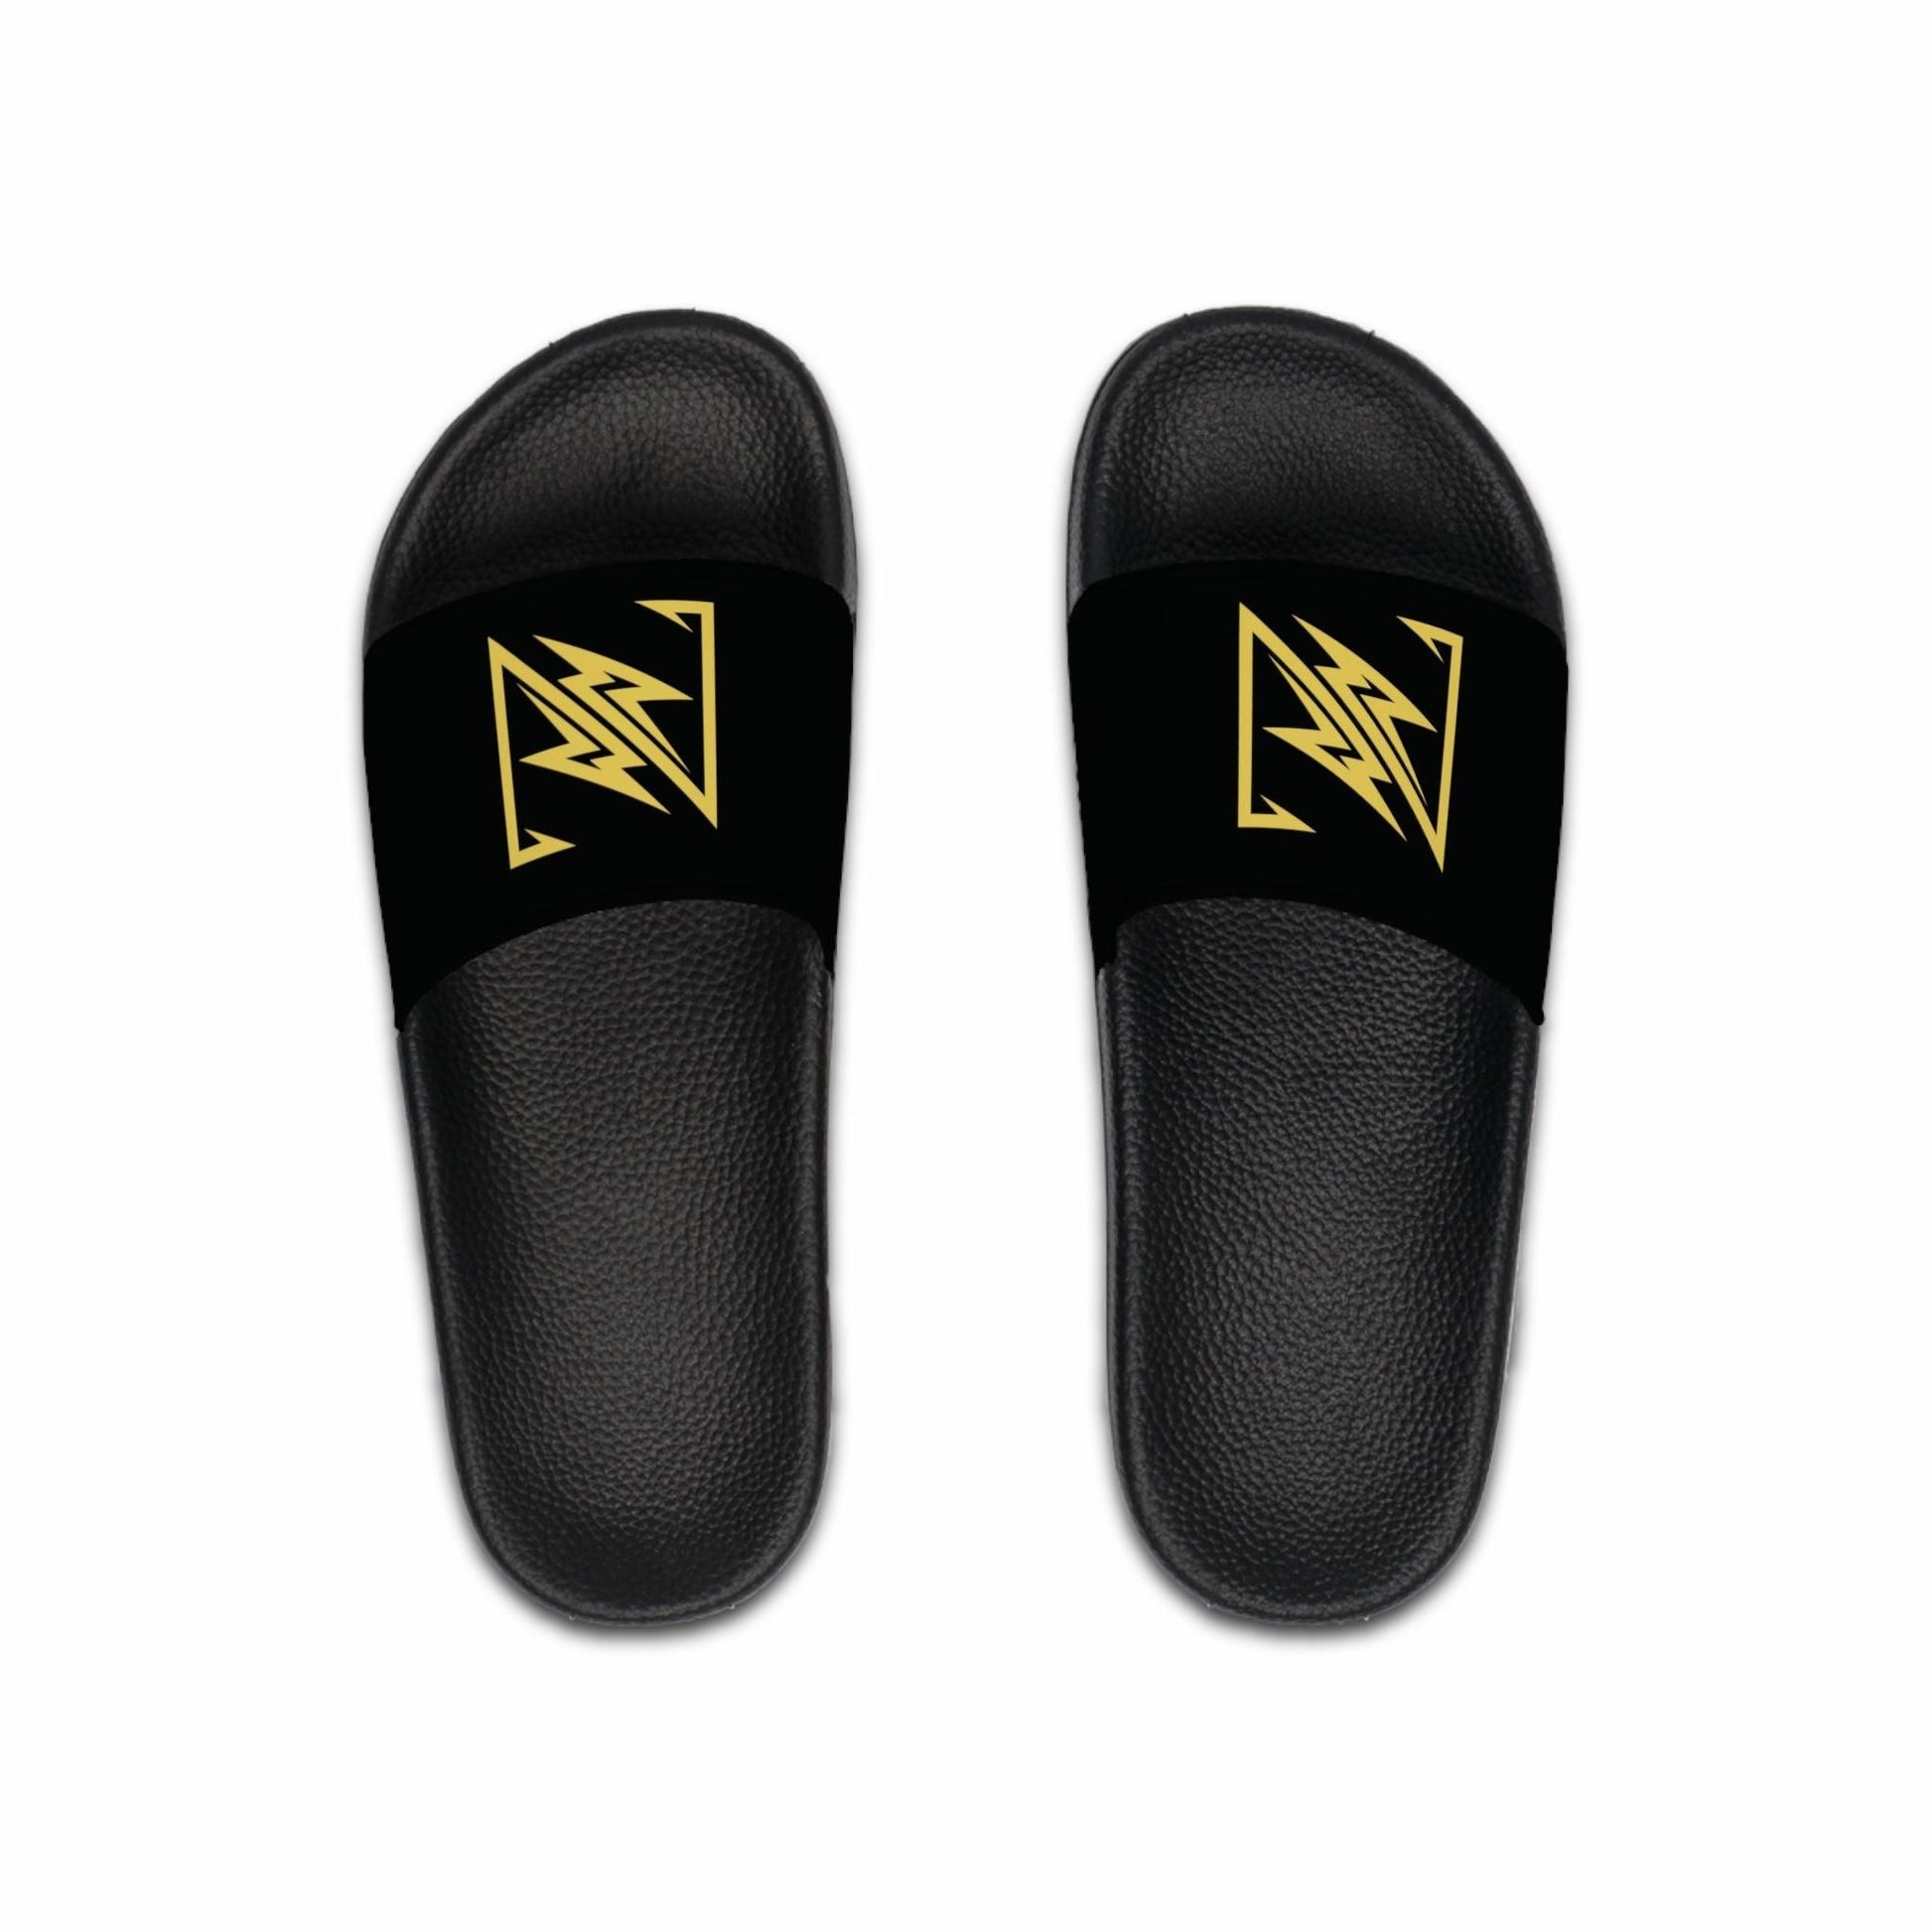 nx vogue Men's Slide Sandals Shoes Black sole US 11 